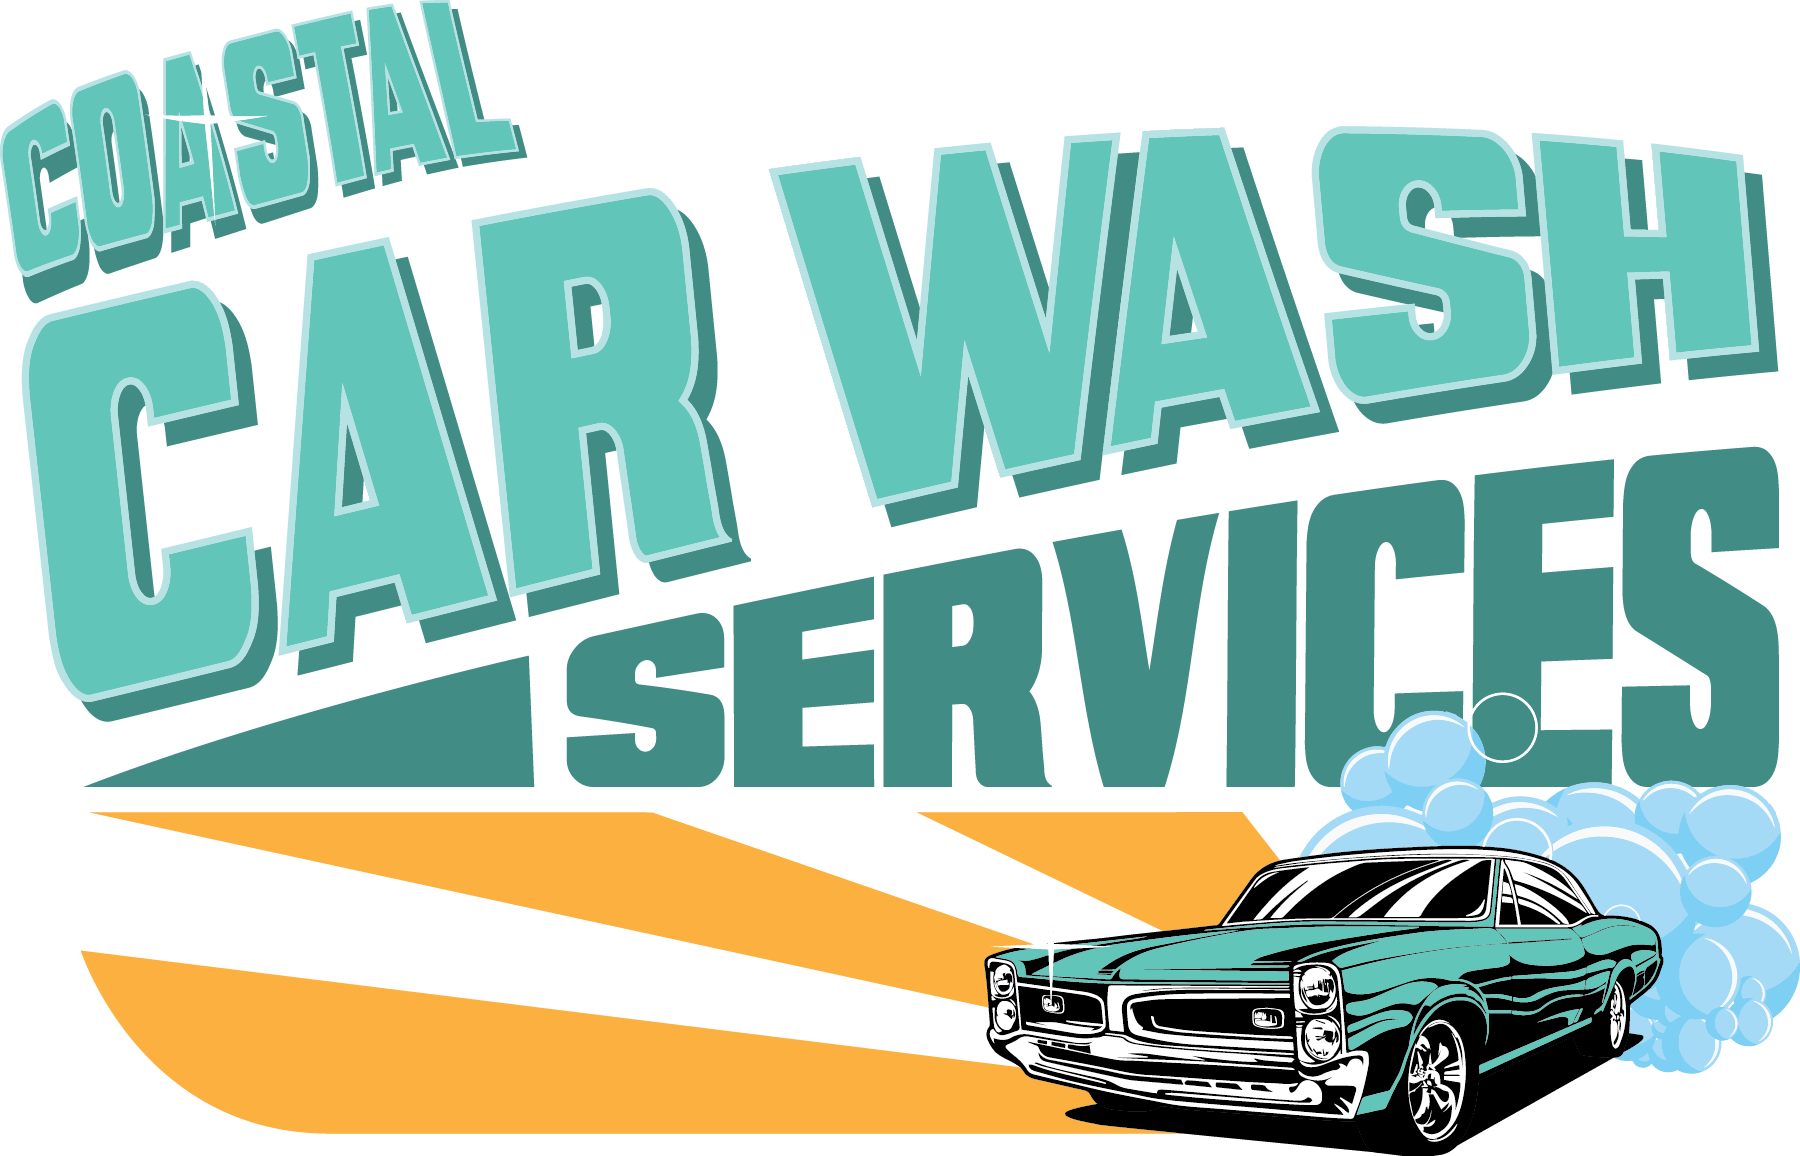 Coastal Car Wash Services, LLC logo